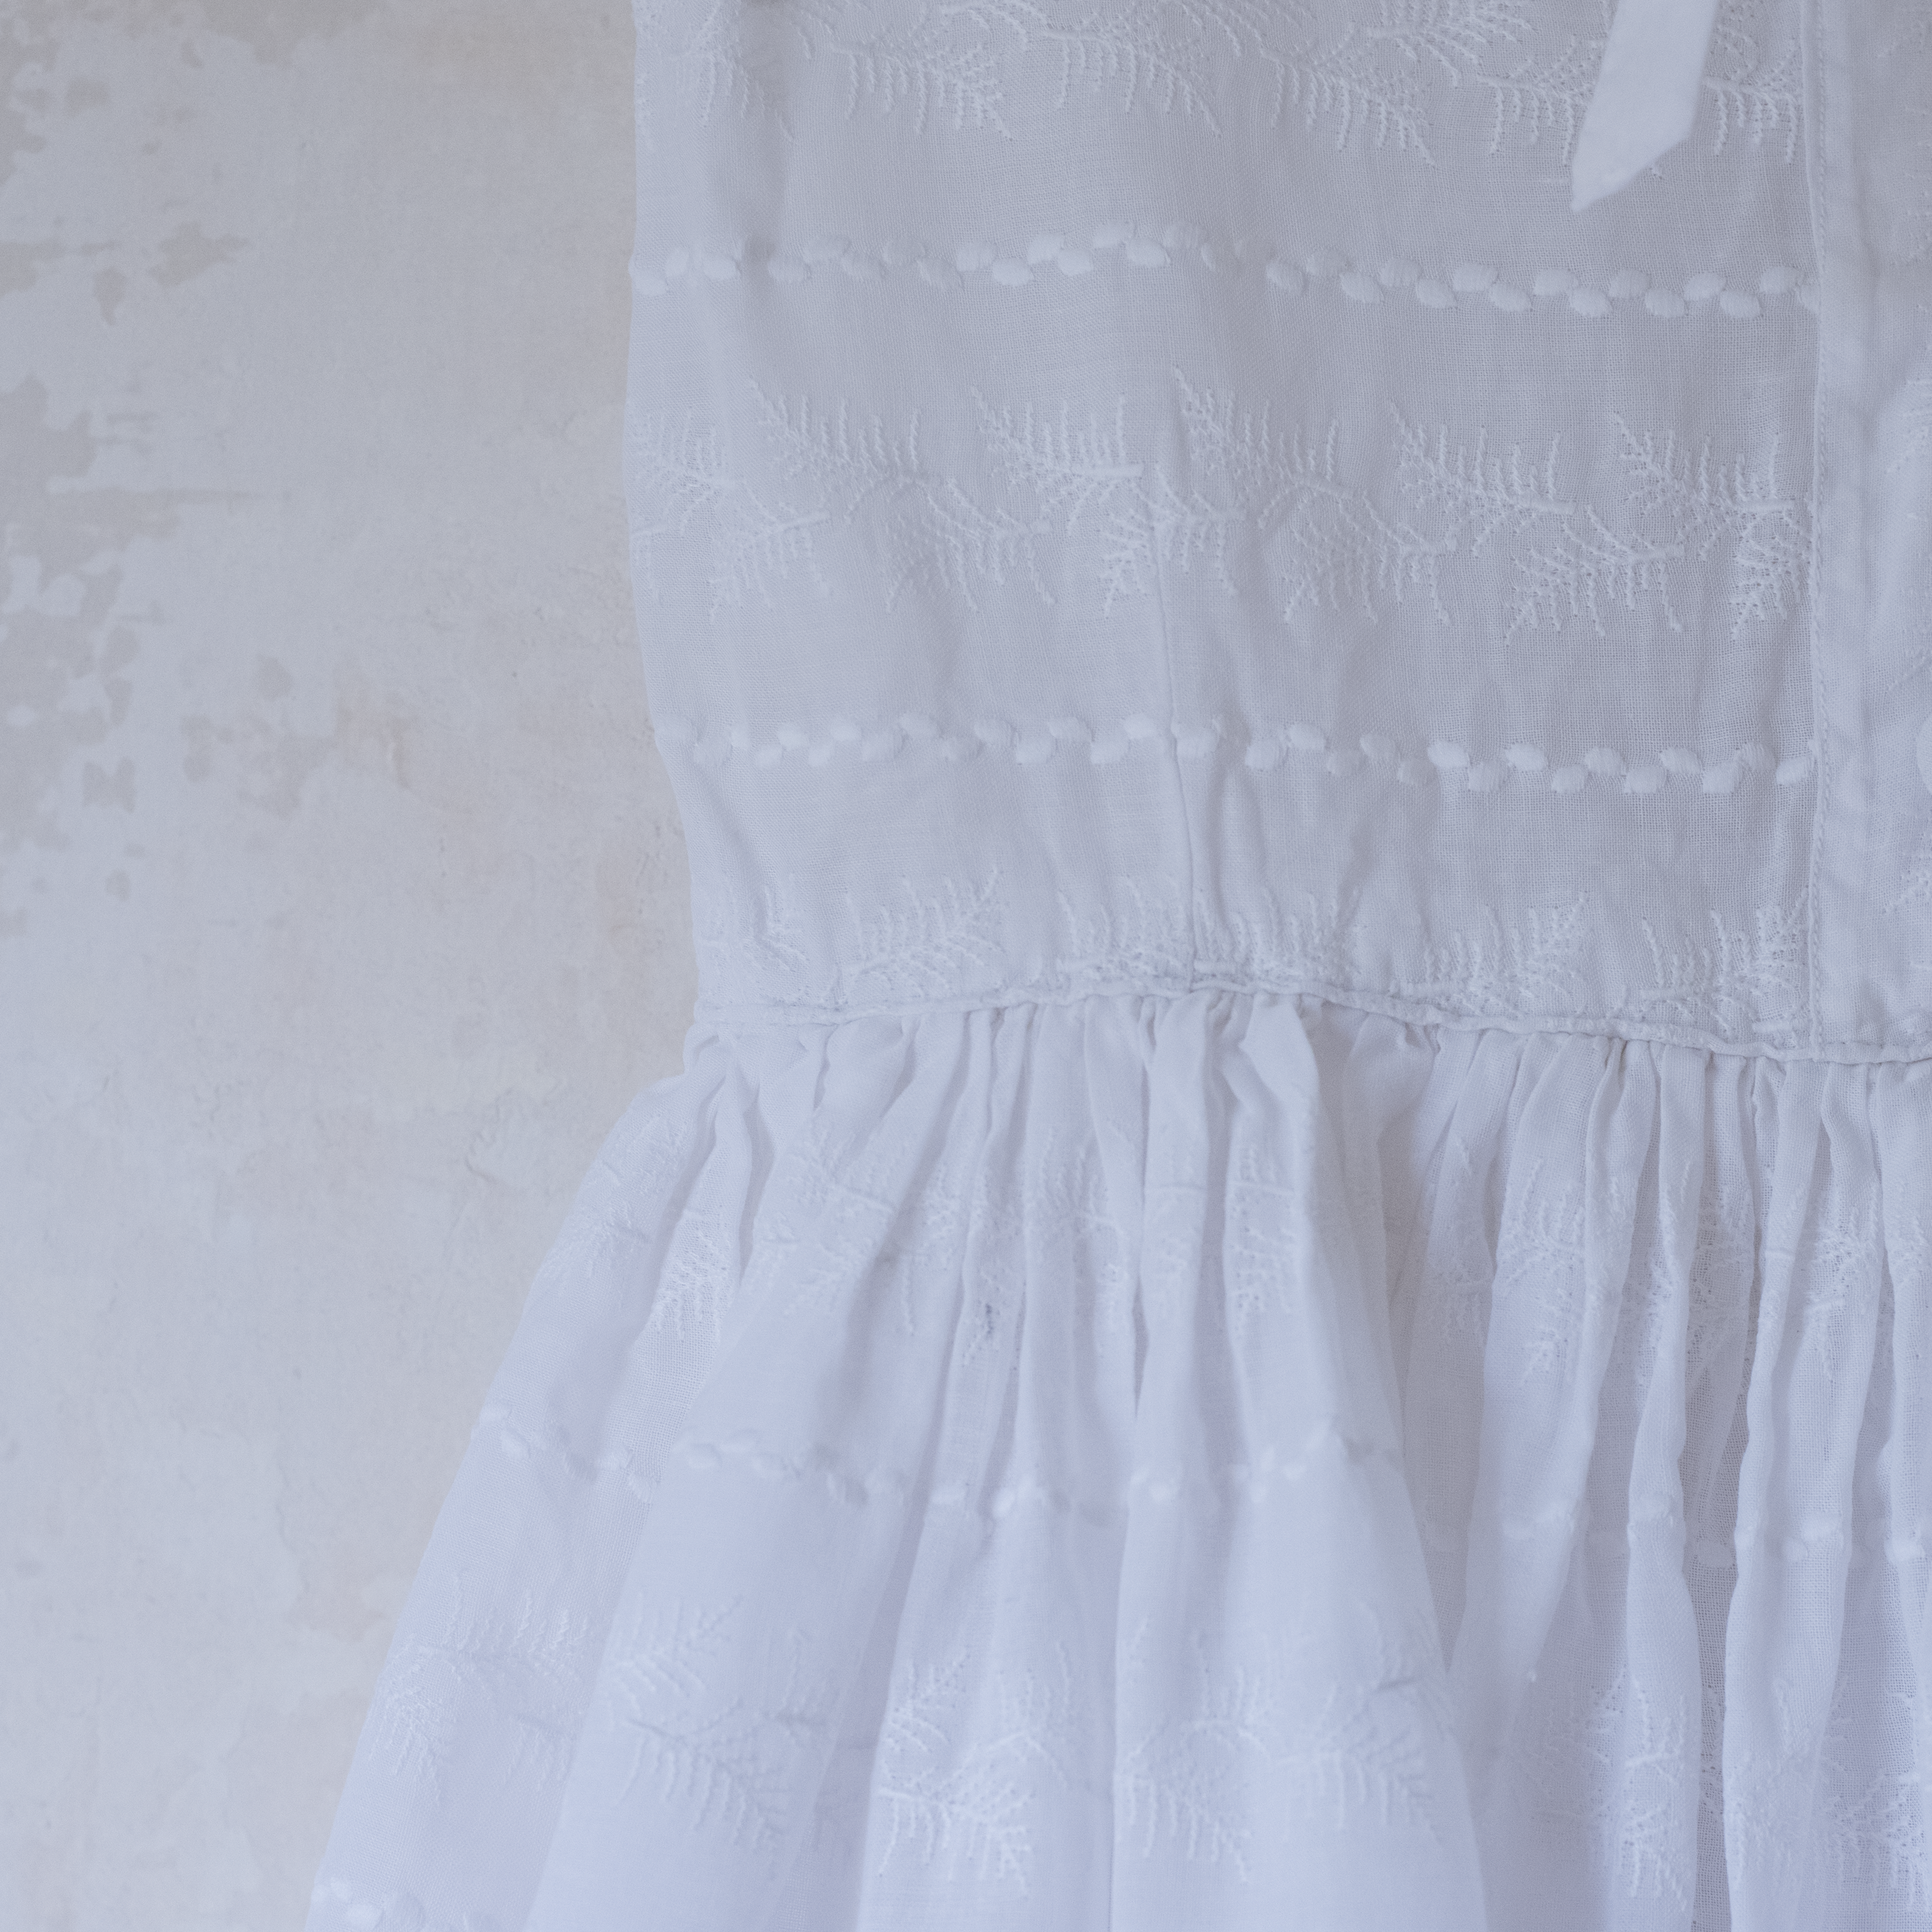 שמלה לבנה רקומה | 7-8 שנים